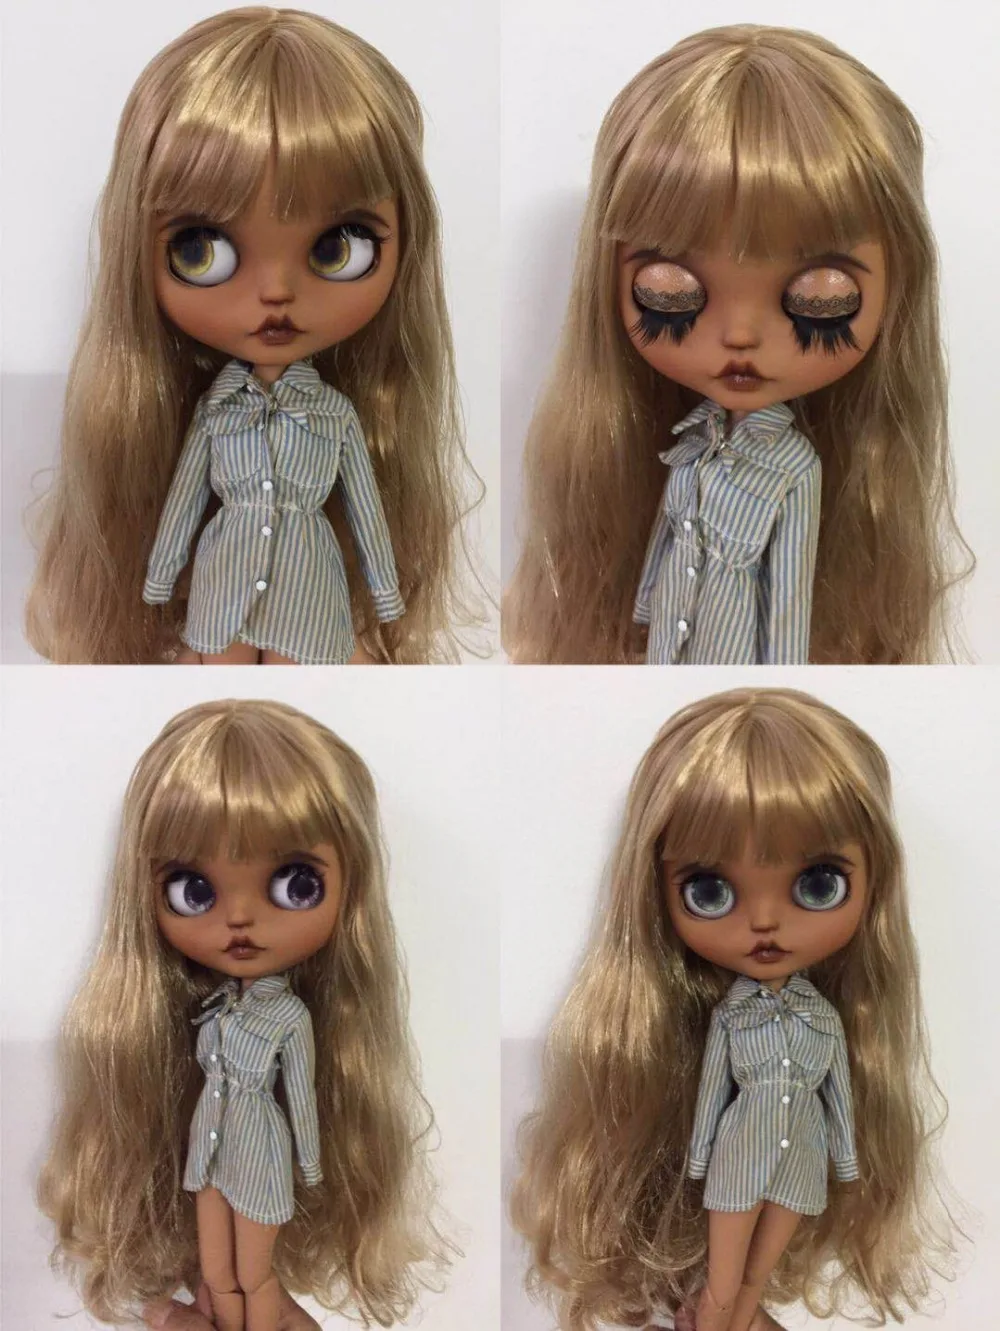 Кастомизация кукла Обнаженная blyth кукла милая кукла DIY кукла 201904 черная кожа